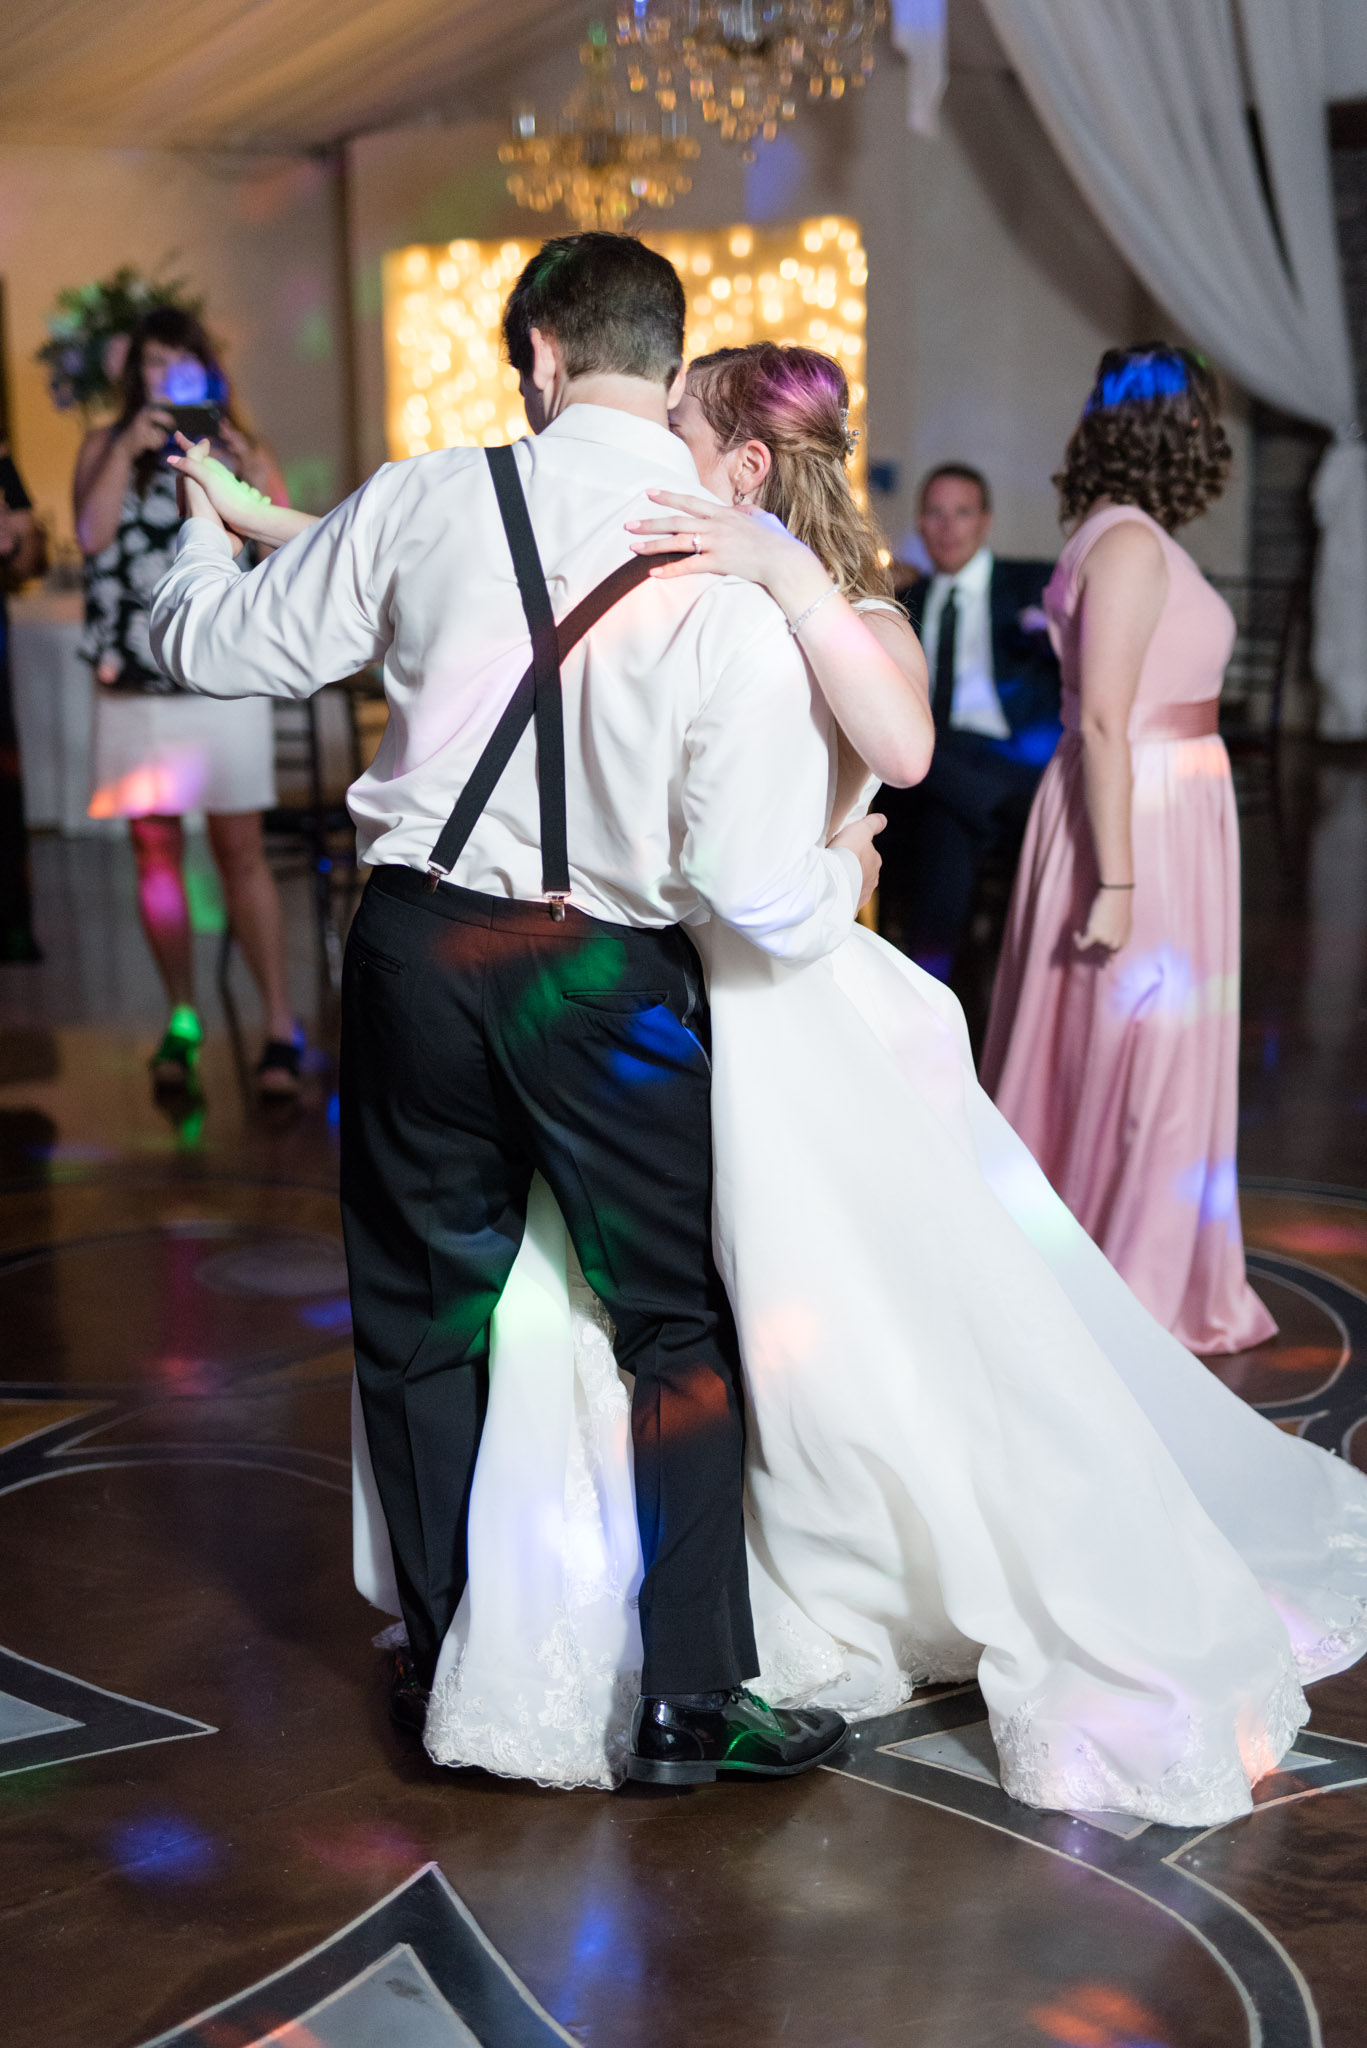 Bride and groom waltz at reception.